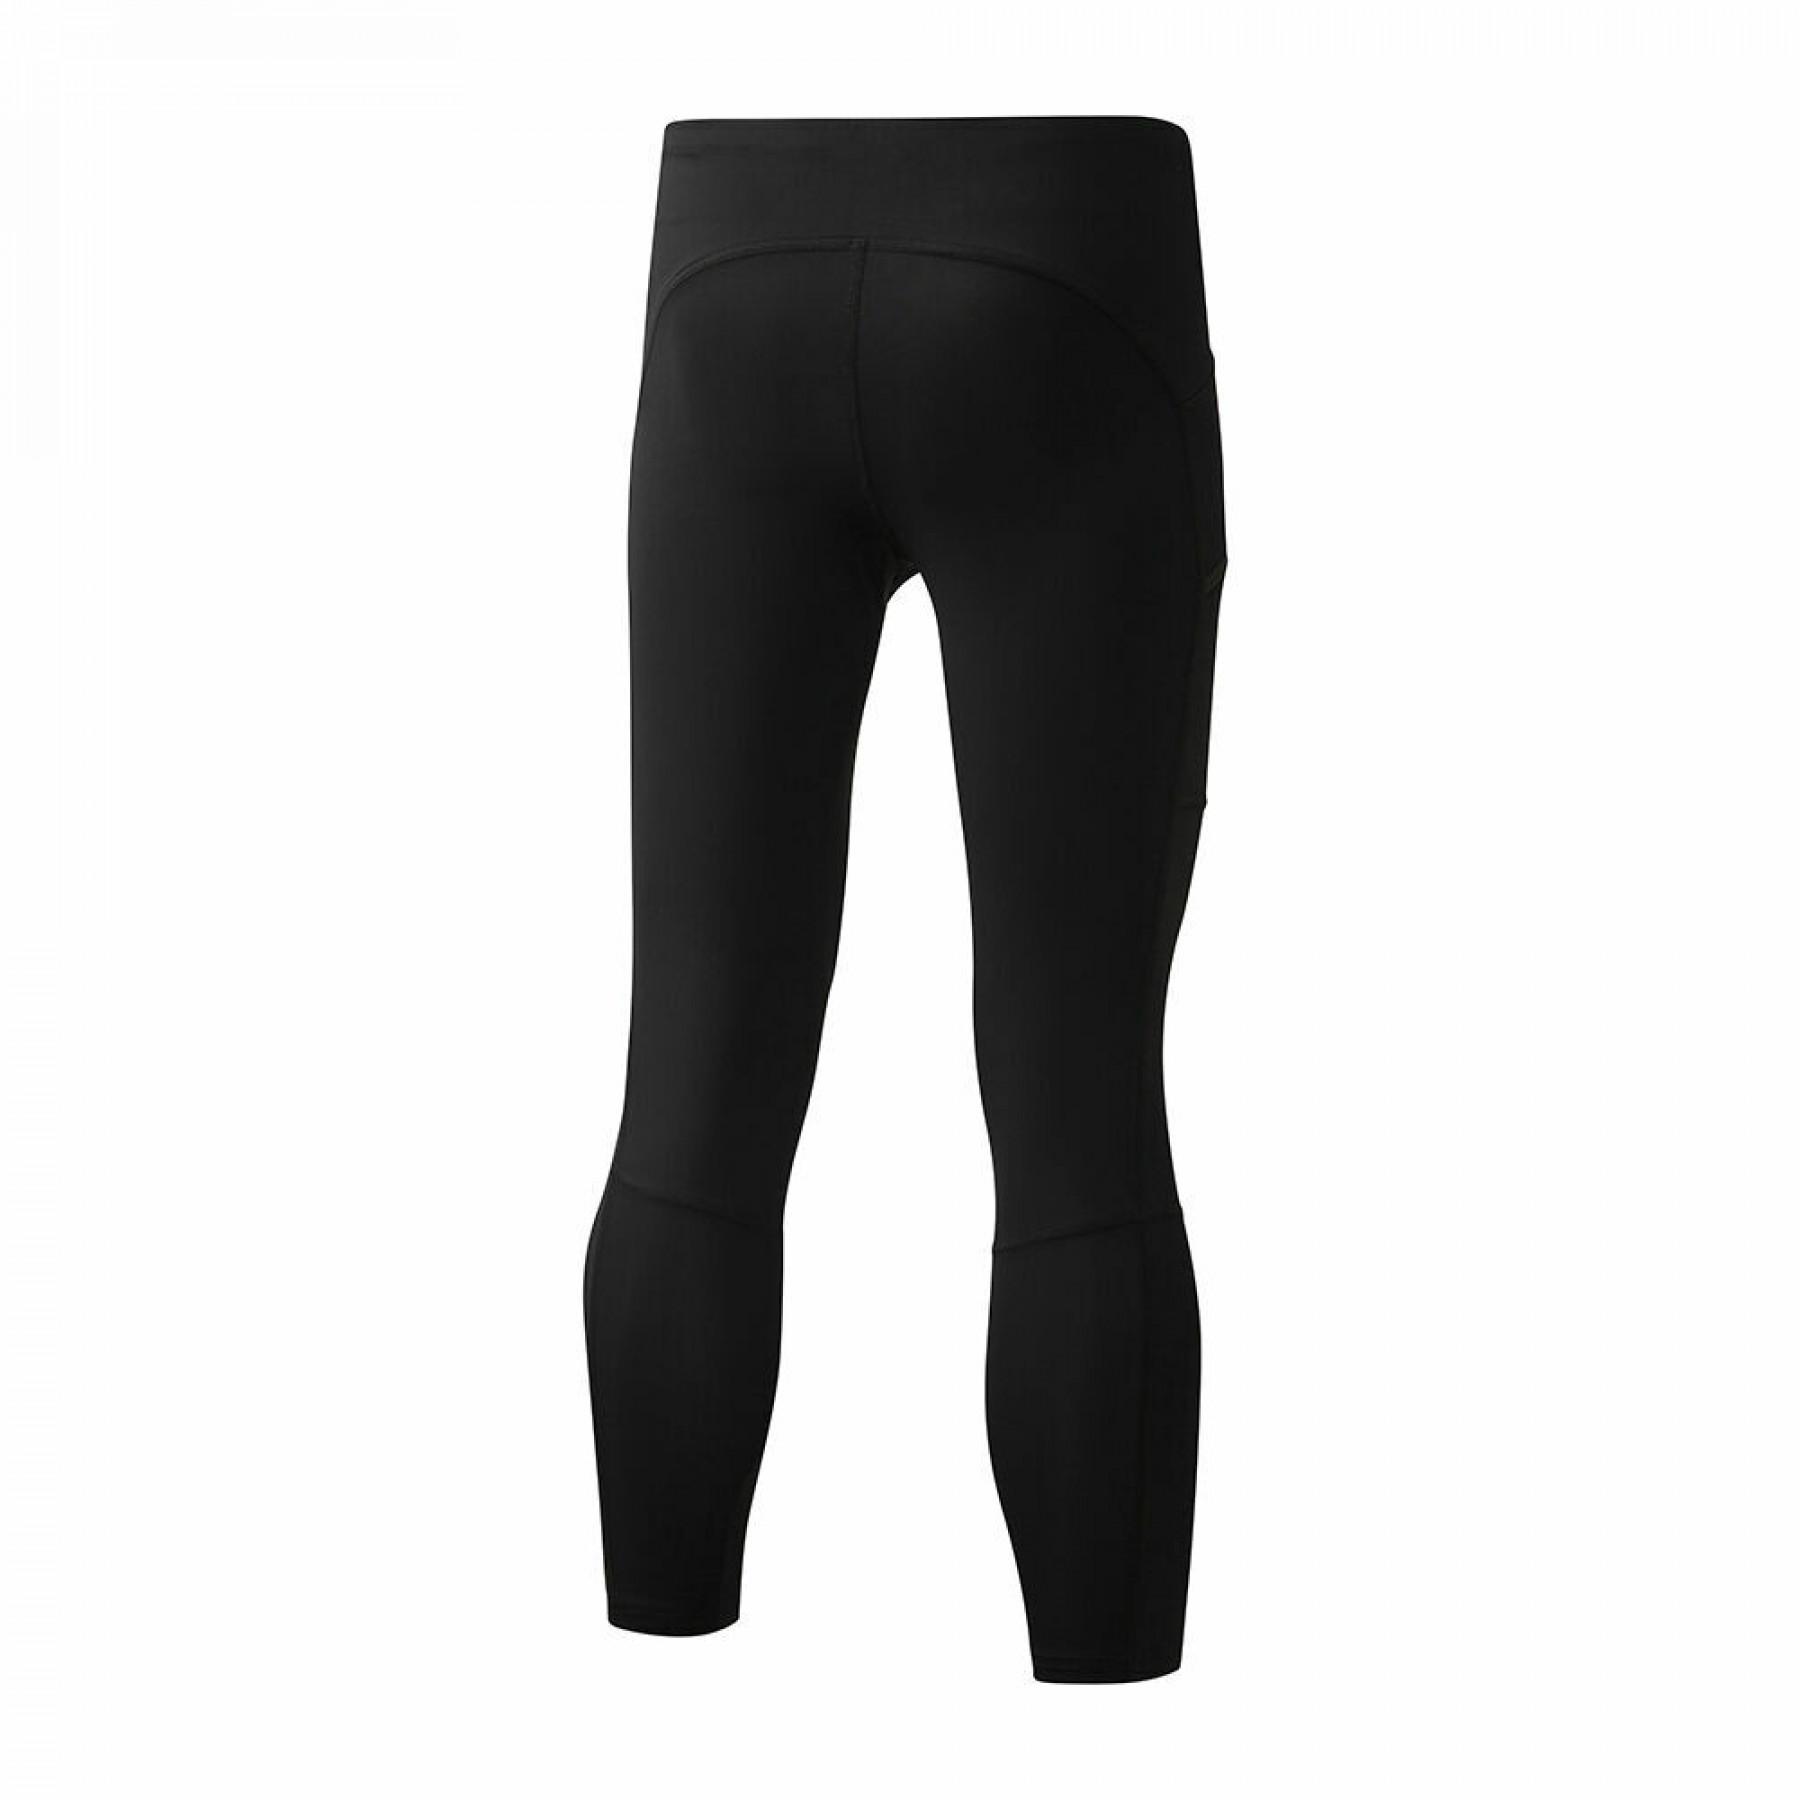 Women's trousers Mizuno Core 3/4 tight